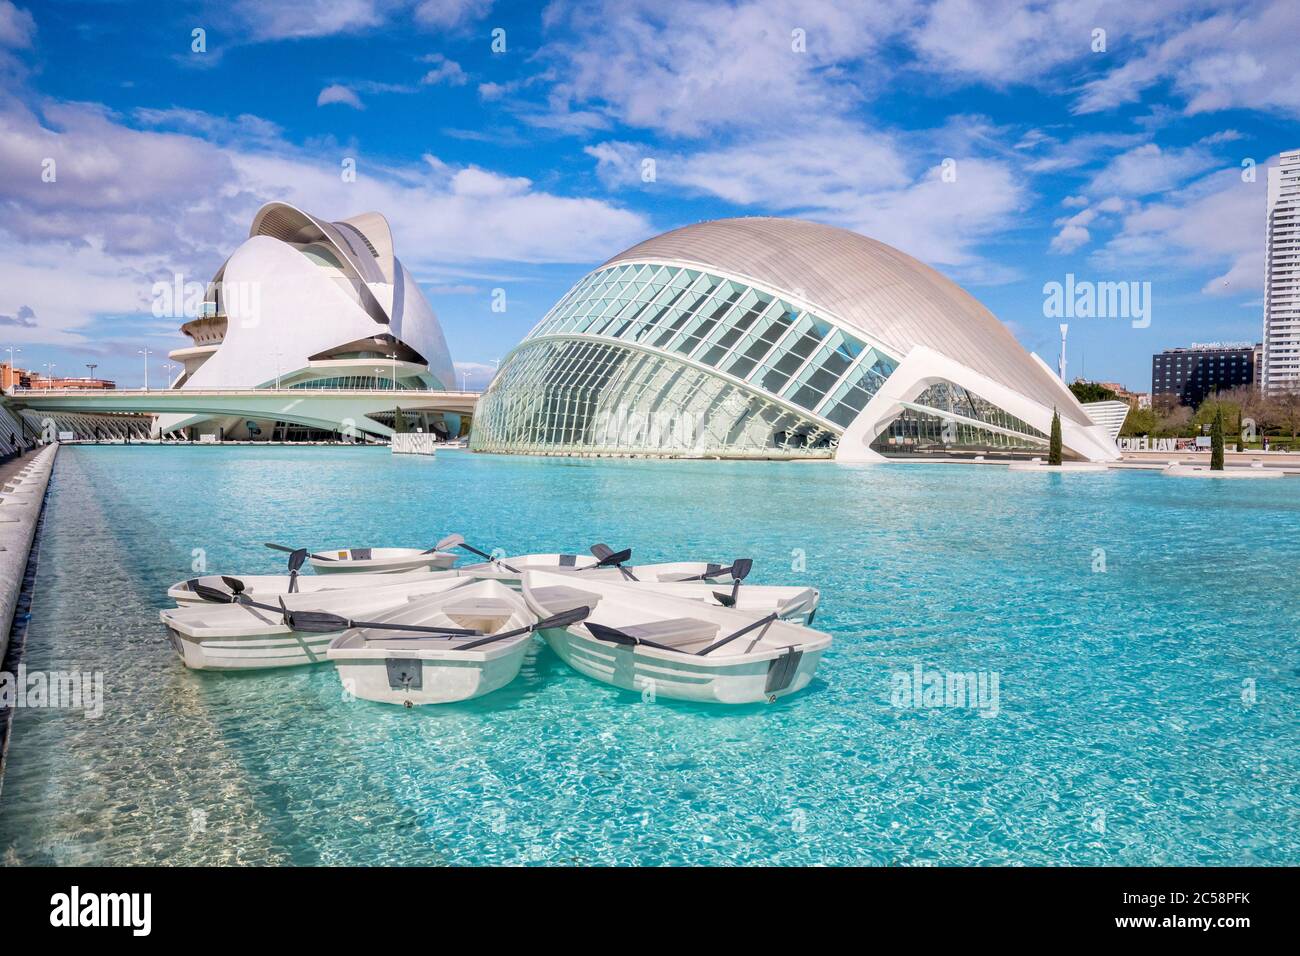 3 mars 2020: Valence, Espagne - l'aviron de bateaux sur le lac en face du cinéma IMAX hémisferique dans la Cité des Arts et des Sciences de Valence. Dans le b Banque D'Images